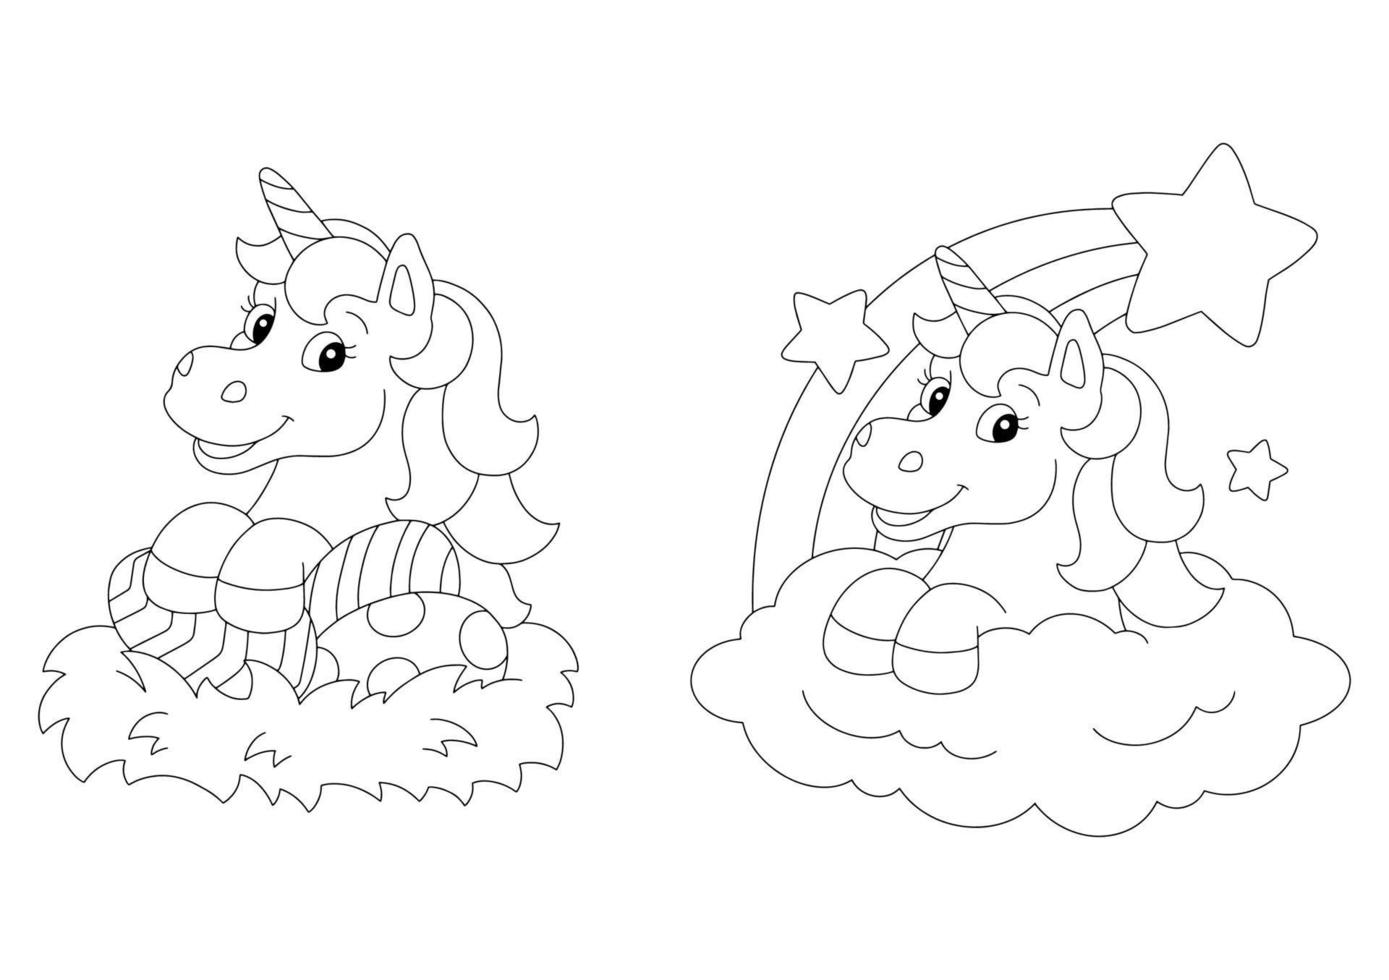 pasqua e magico unicorno. pagina del libro da colorare per bambini. personaggio in stile cartone animato. illustrazione vettoriale isolato su sfondo bianco.